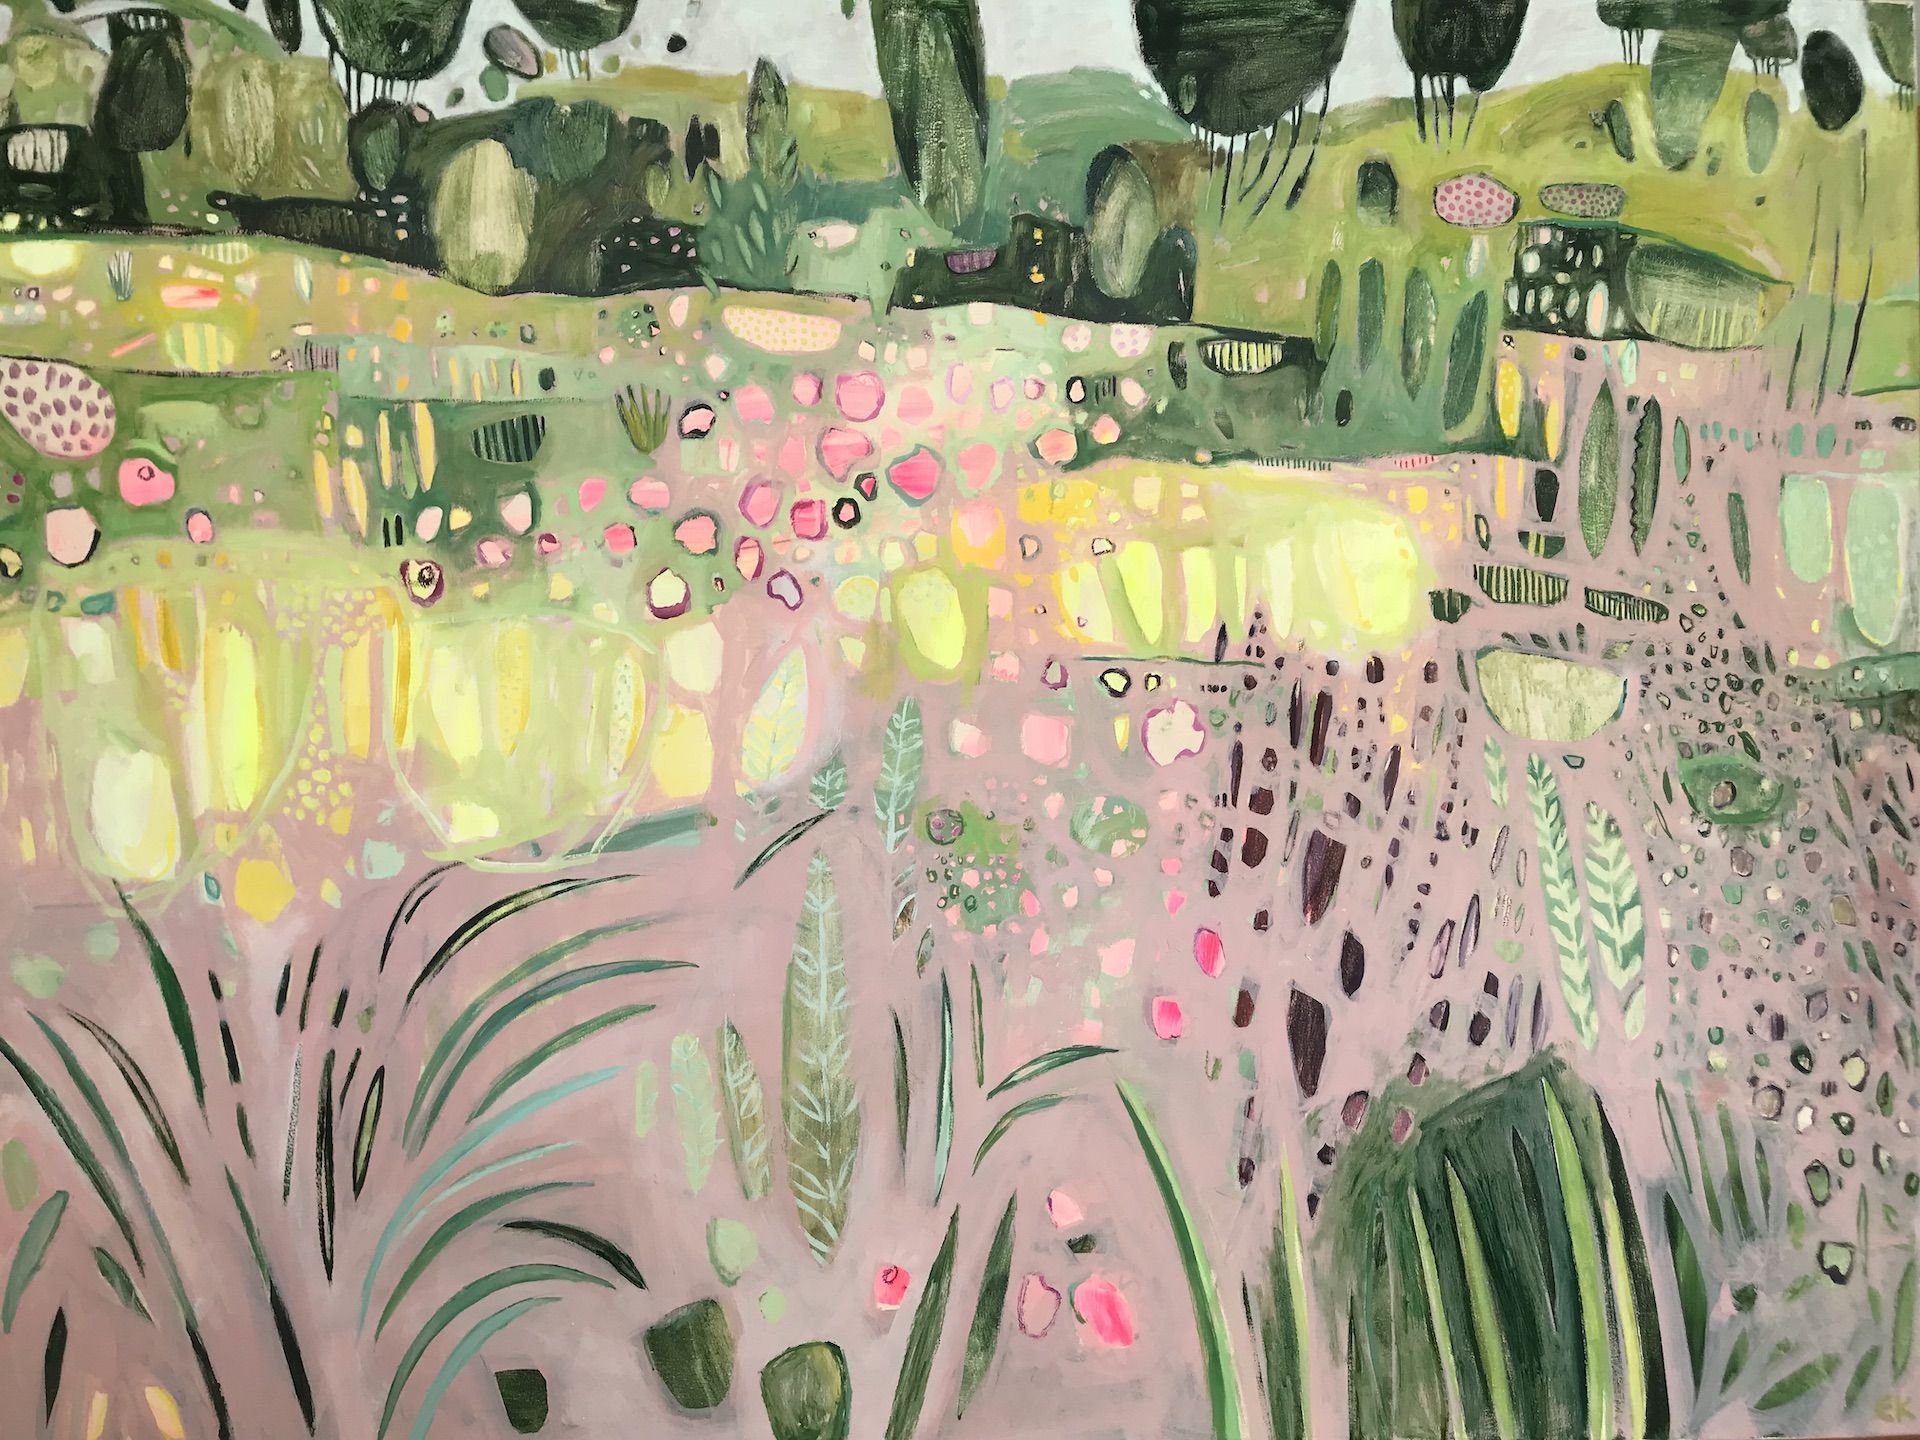 A Walk Through a Summer Garden by Elaine Kazimierczuk